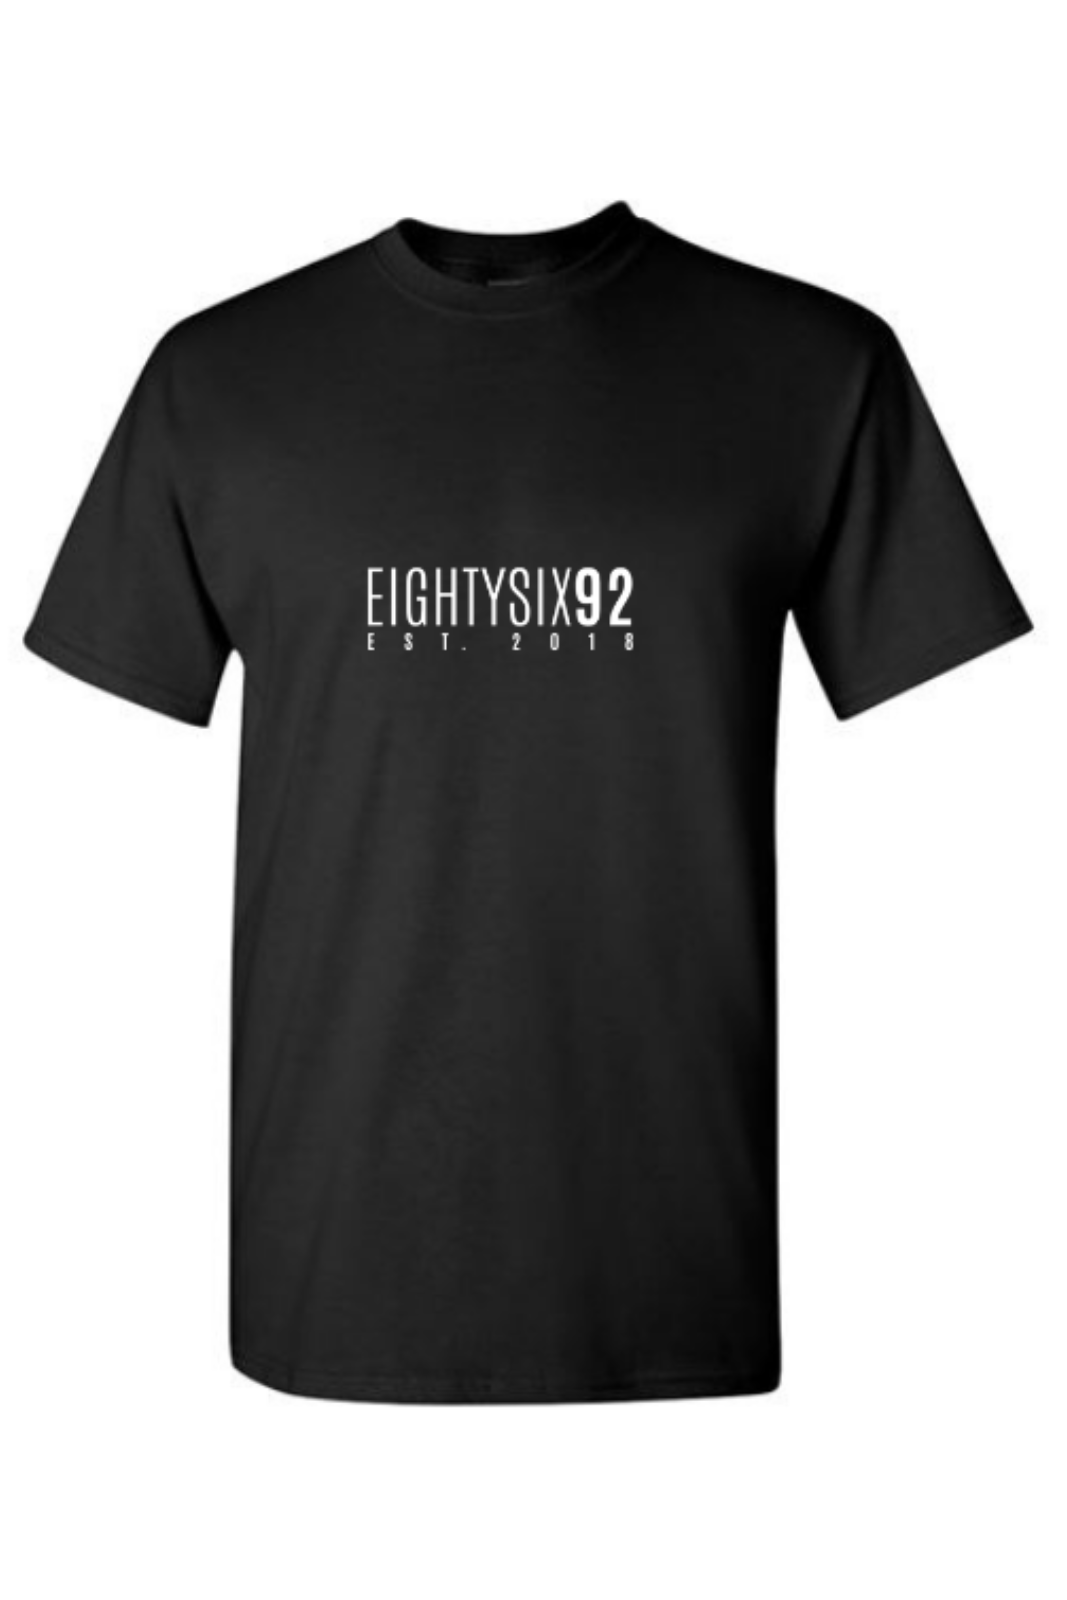 Eighty Six 92 T-shirt Black